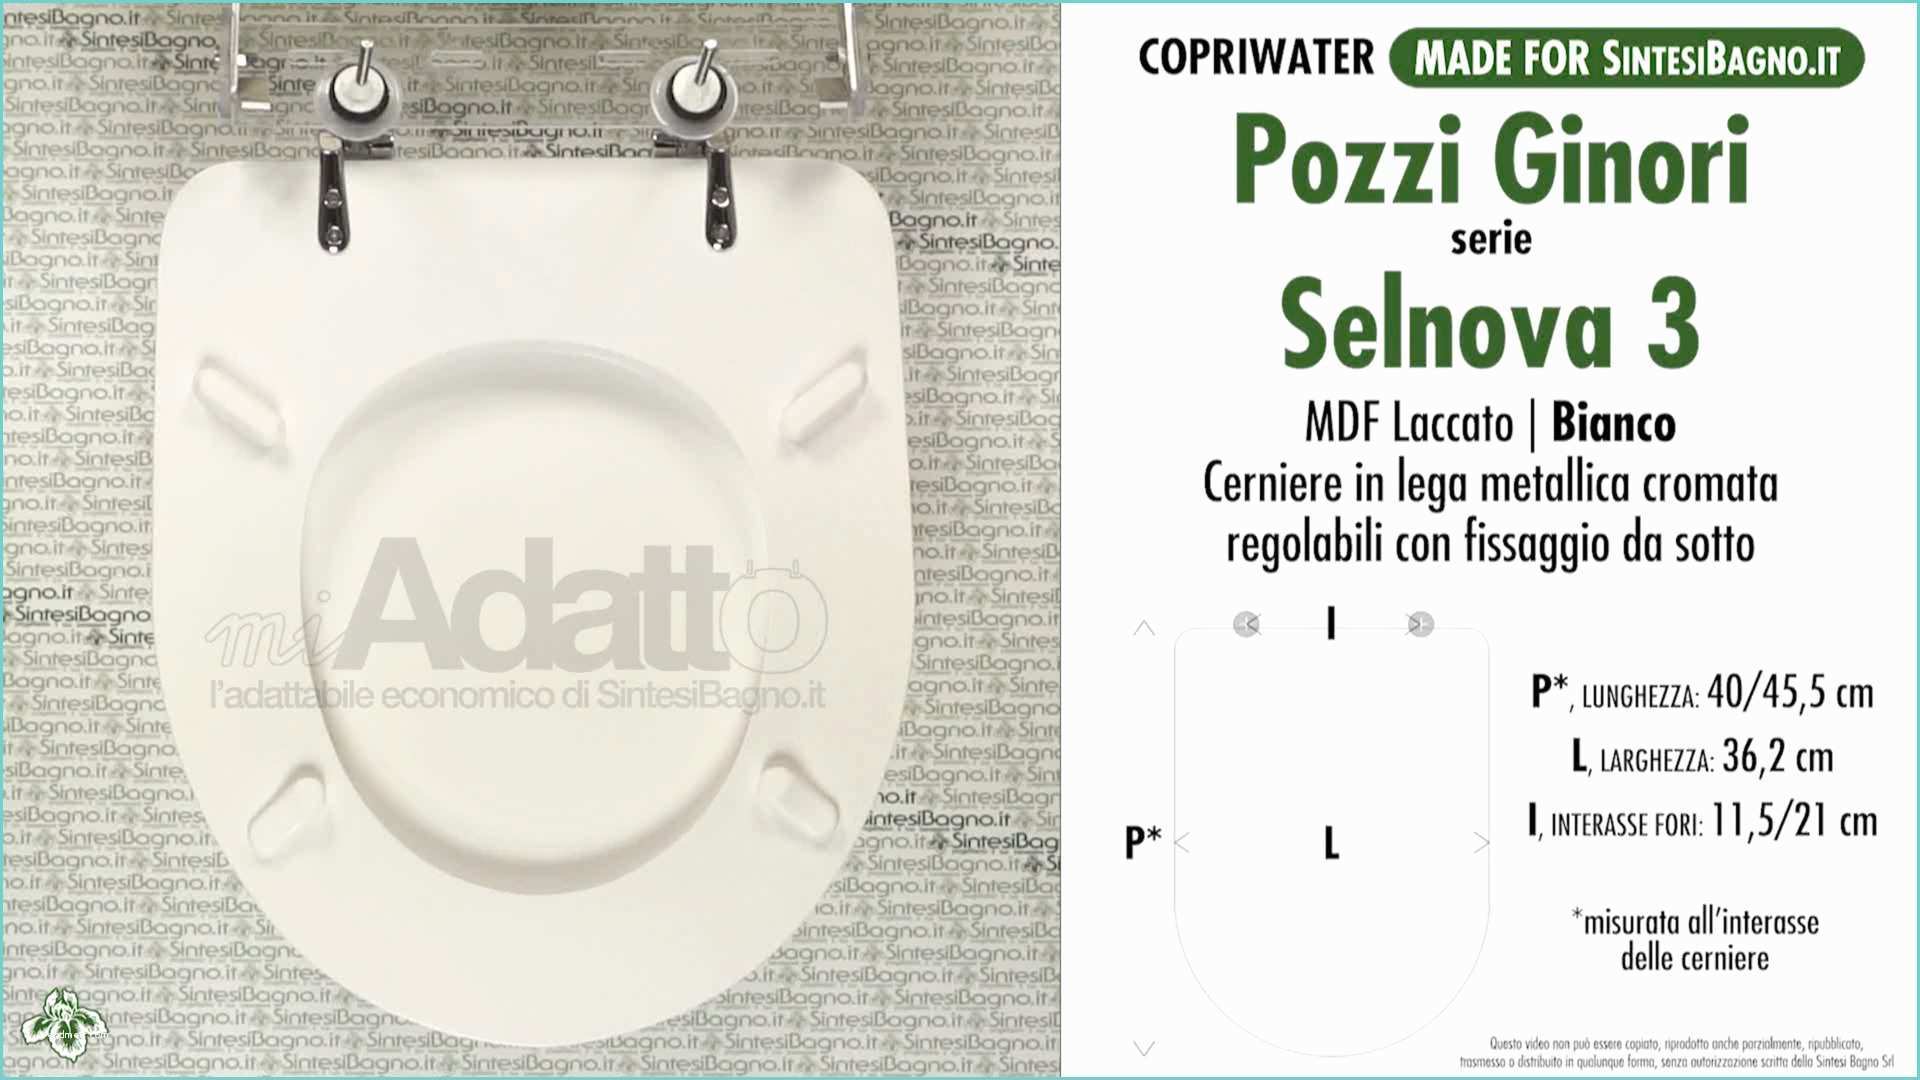 Pozzi Ginori Selnova 3 sospesi Scheda Tecnica Copriwater Economico Per Vaso Selnova 3 Pozzi Ginori